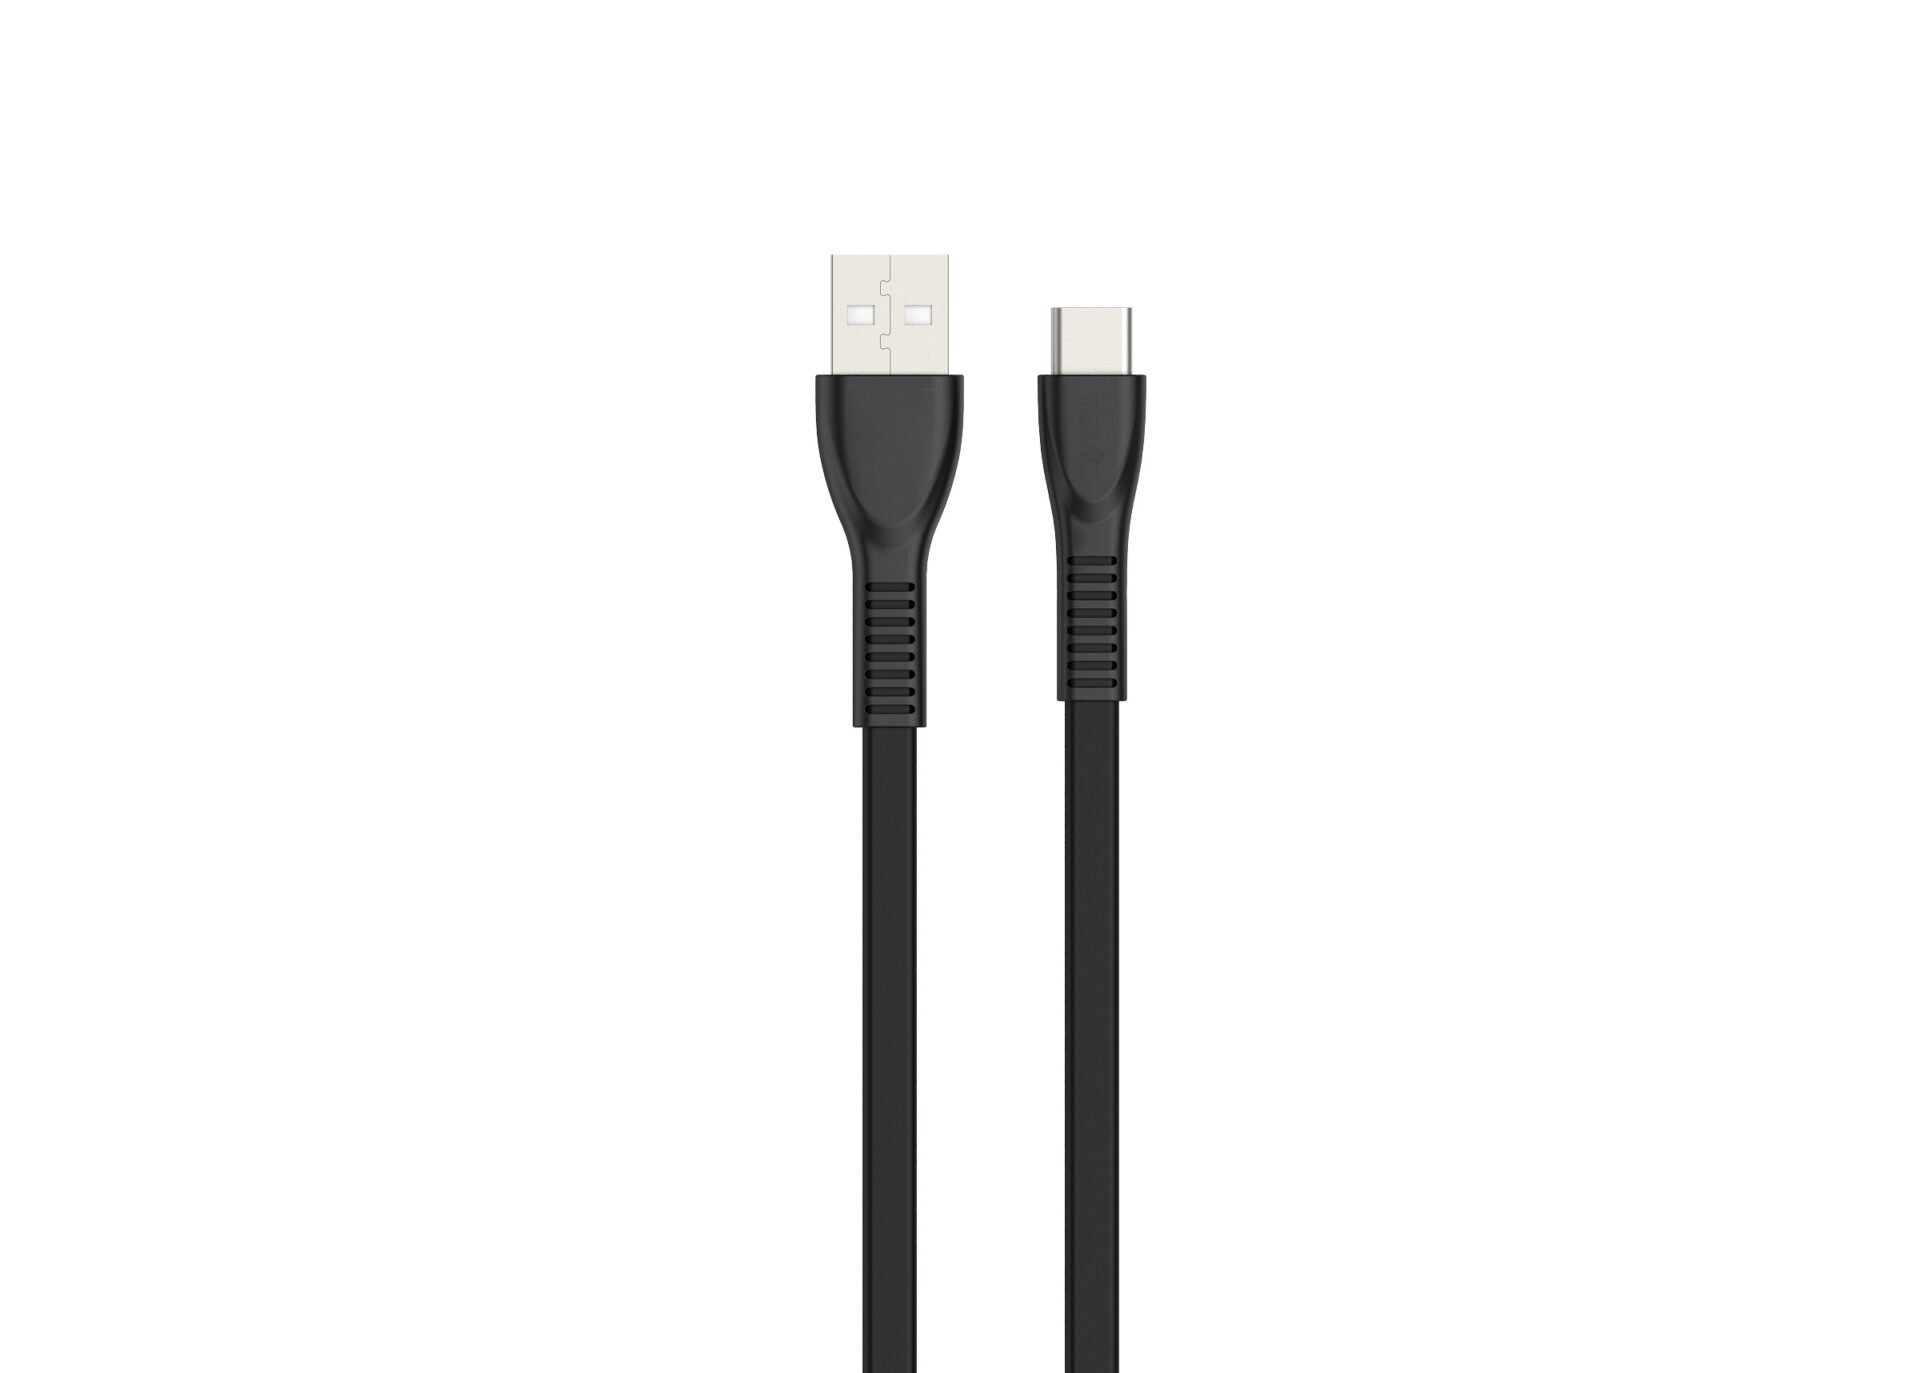 Billede af Havit USB 2.0 USB Type-C kabel i sort